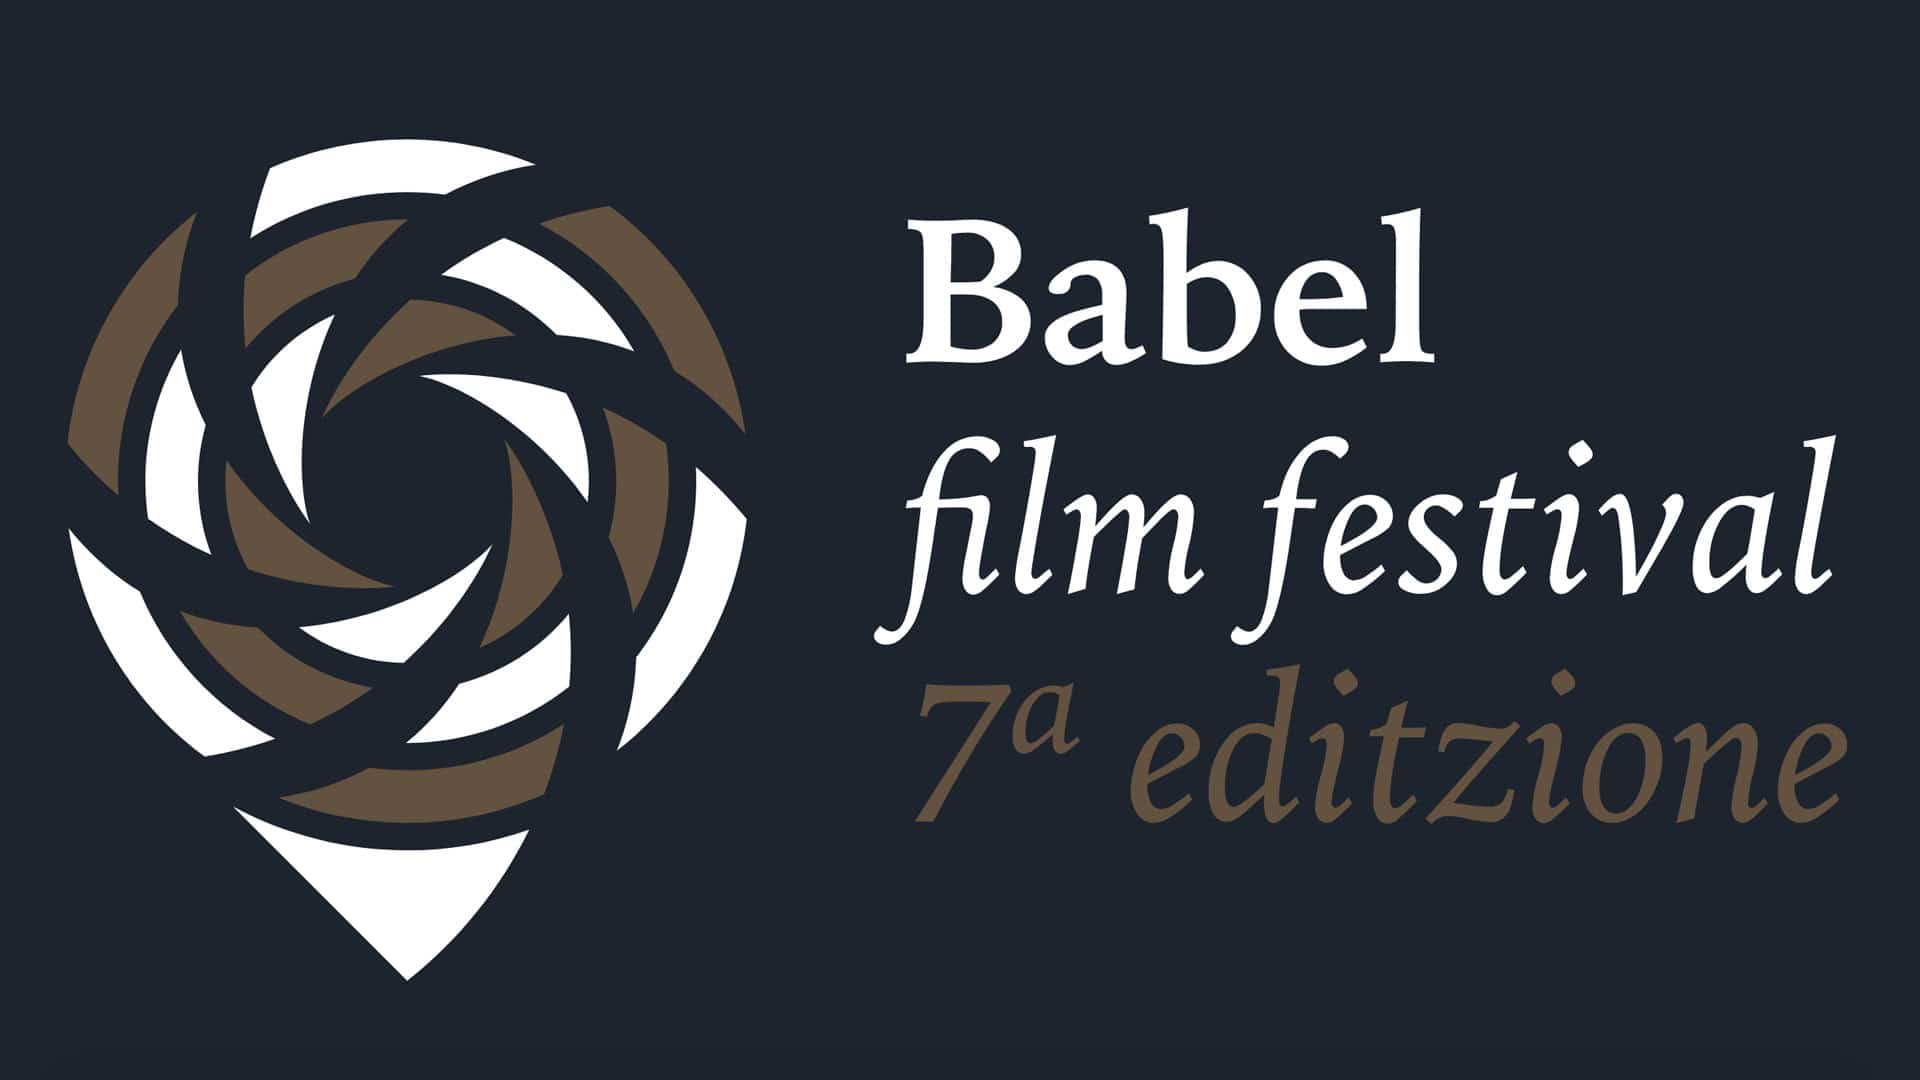 Babel Film Festival - banner